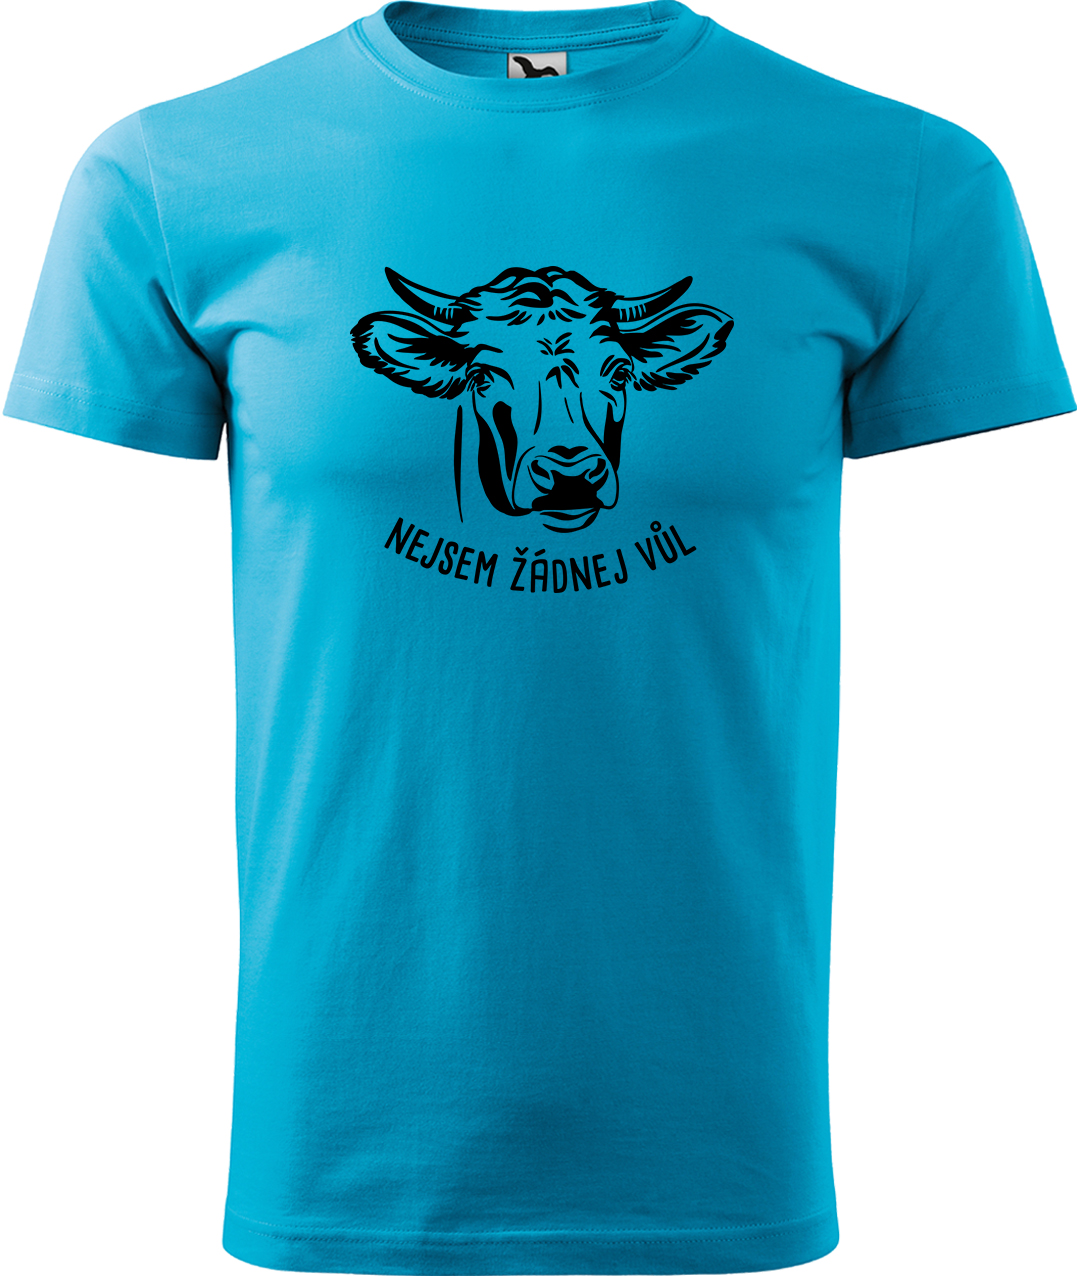 Pánské tričko s krávou - Nejsem žádnej vůl Velikost: L, Barva: Tyrkysová (44), Střih: pánský